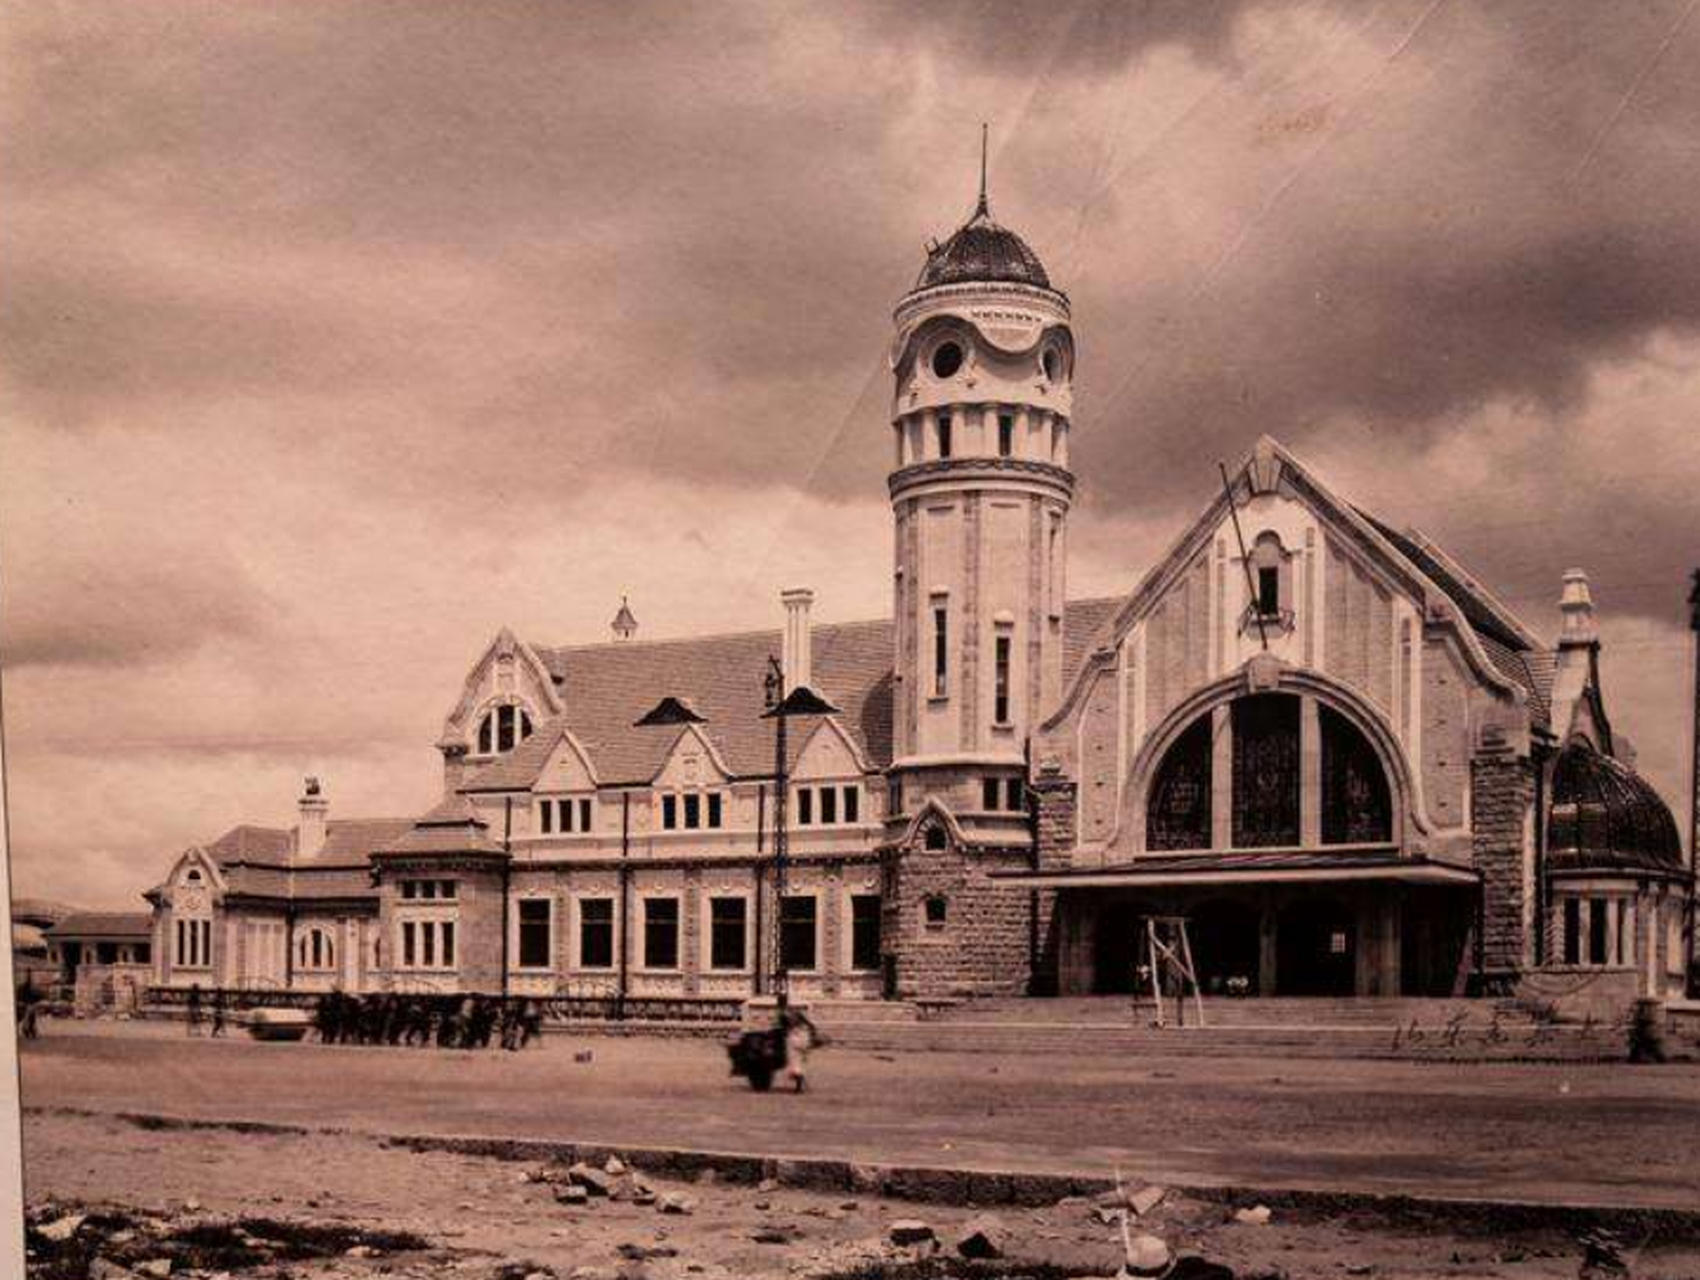 济南老火车站是德国建筑师赫尔曼·菲舍尔设计的典型的德式车站建筑.